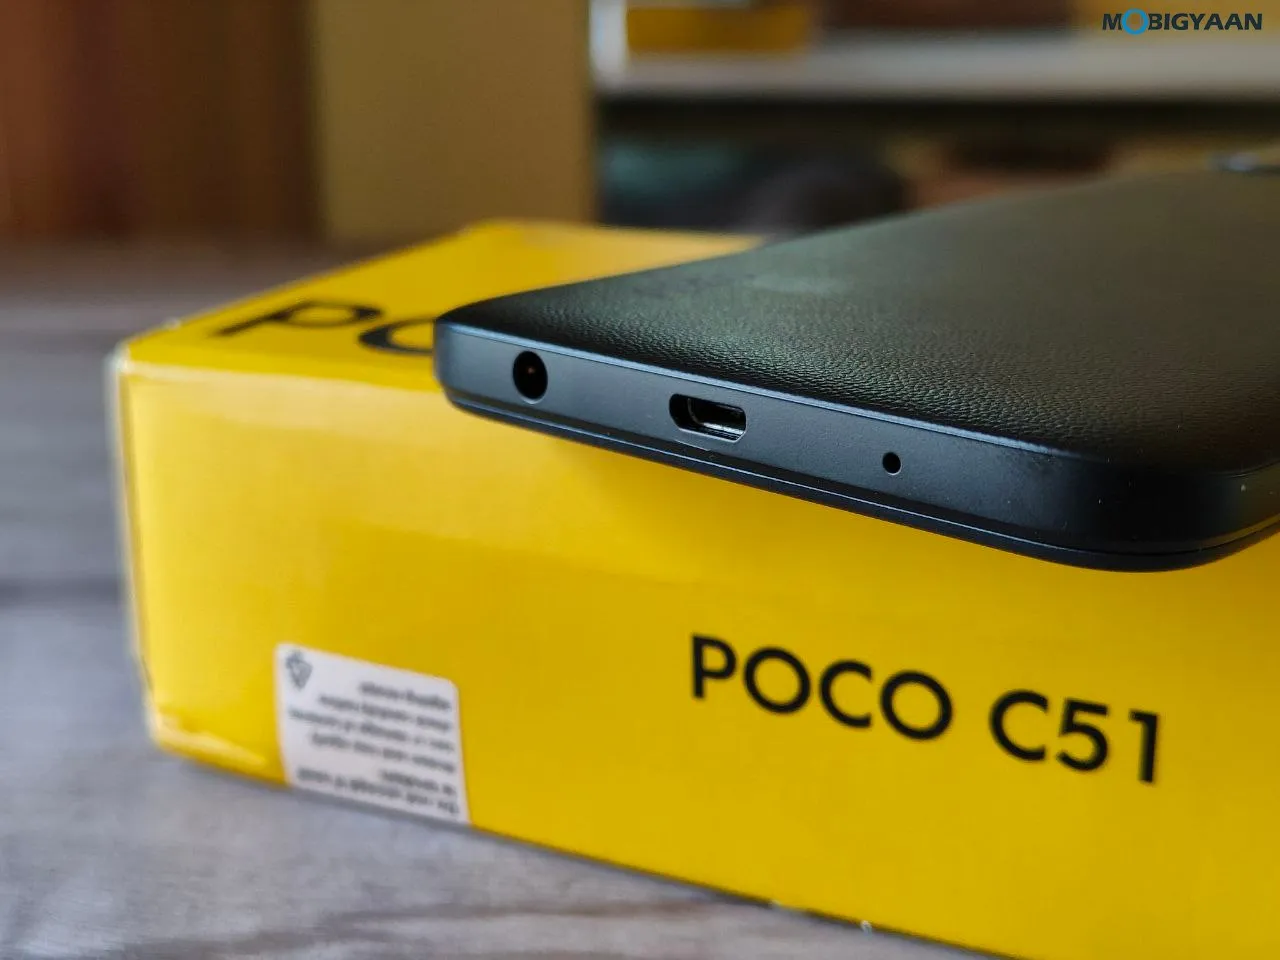 POCO C51 Review Design Display Cameras Build Quality 7